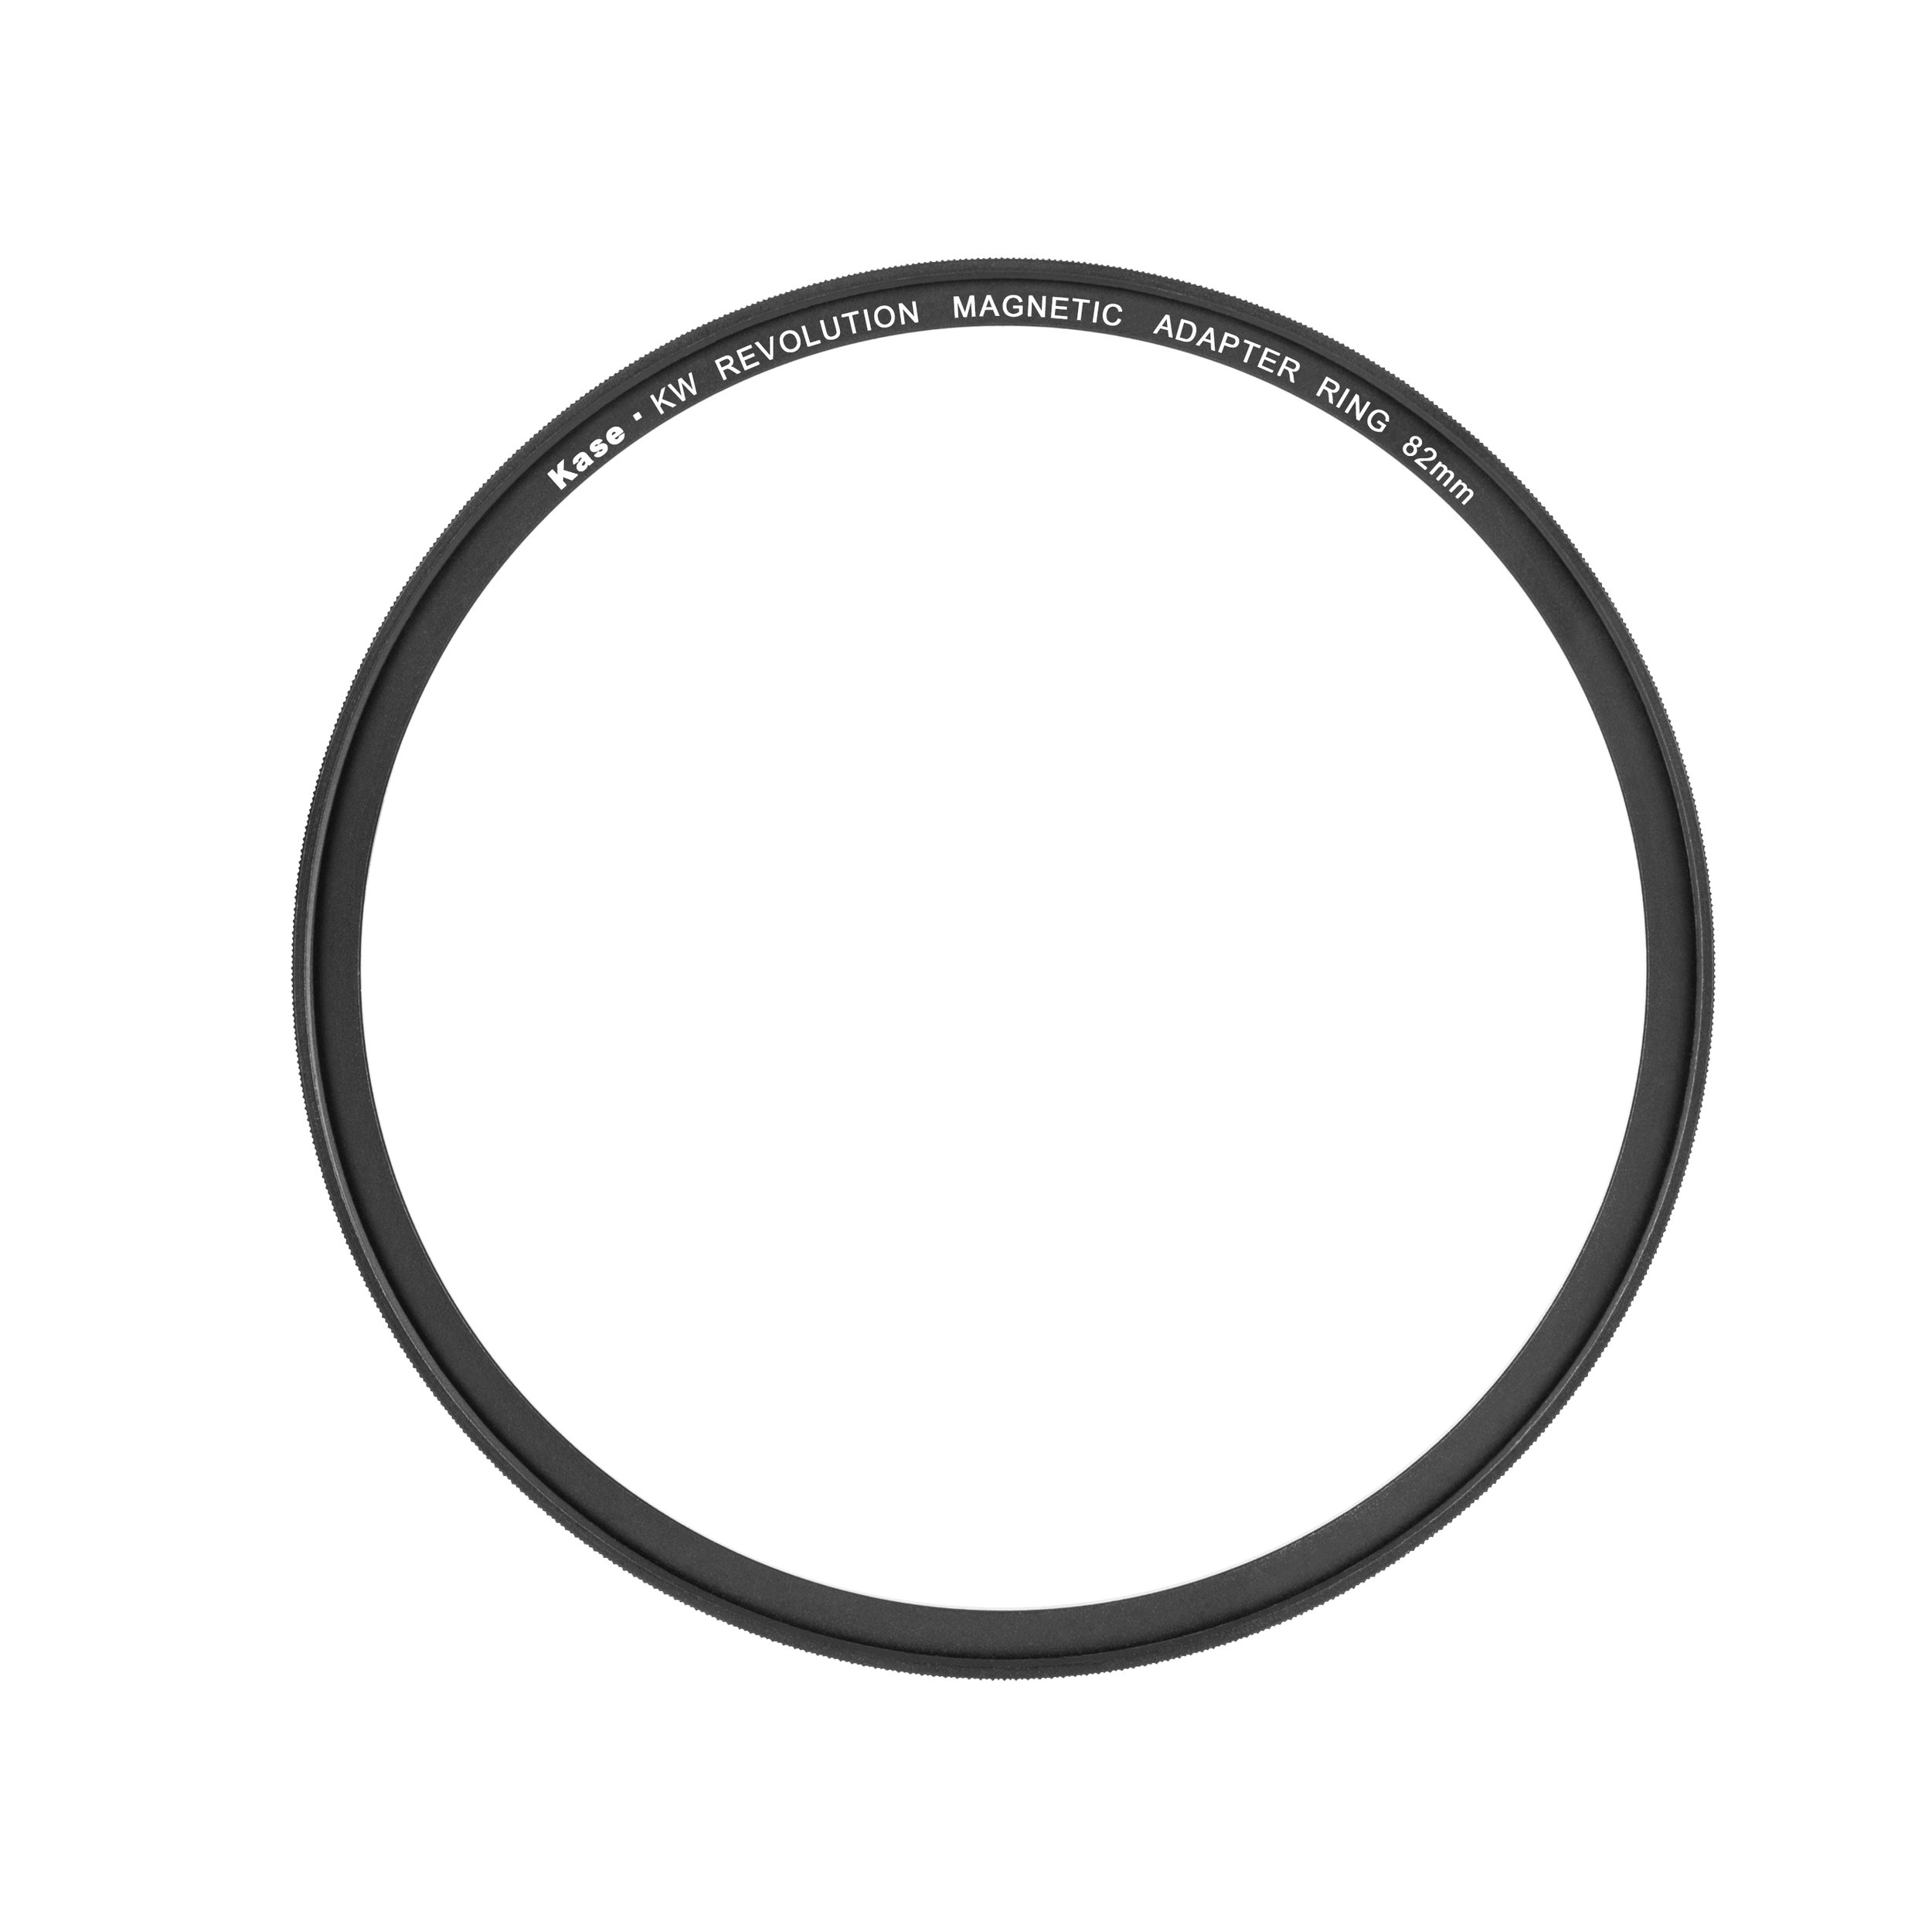 KW Revolution01(magnetic adapter ring).jpg